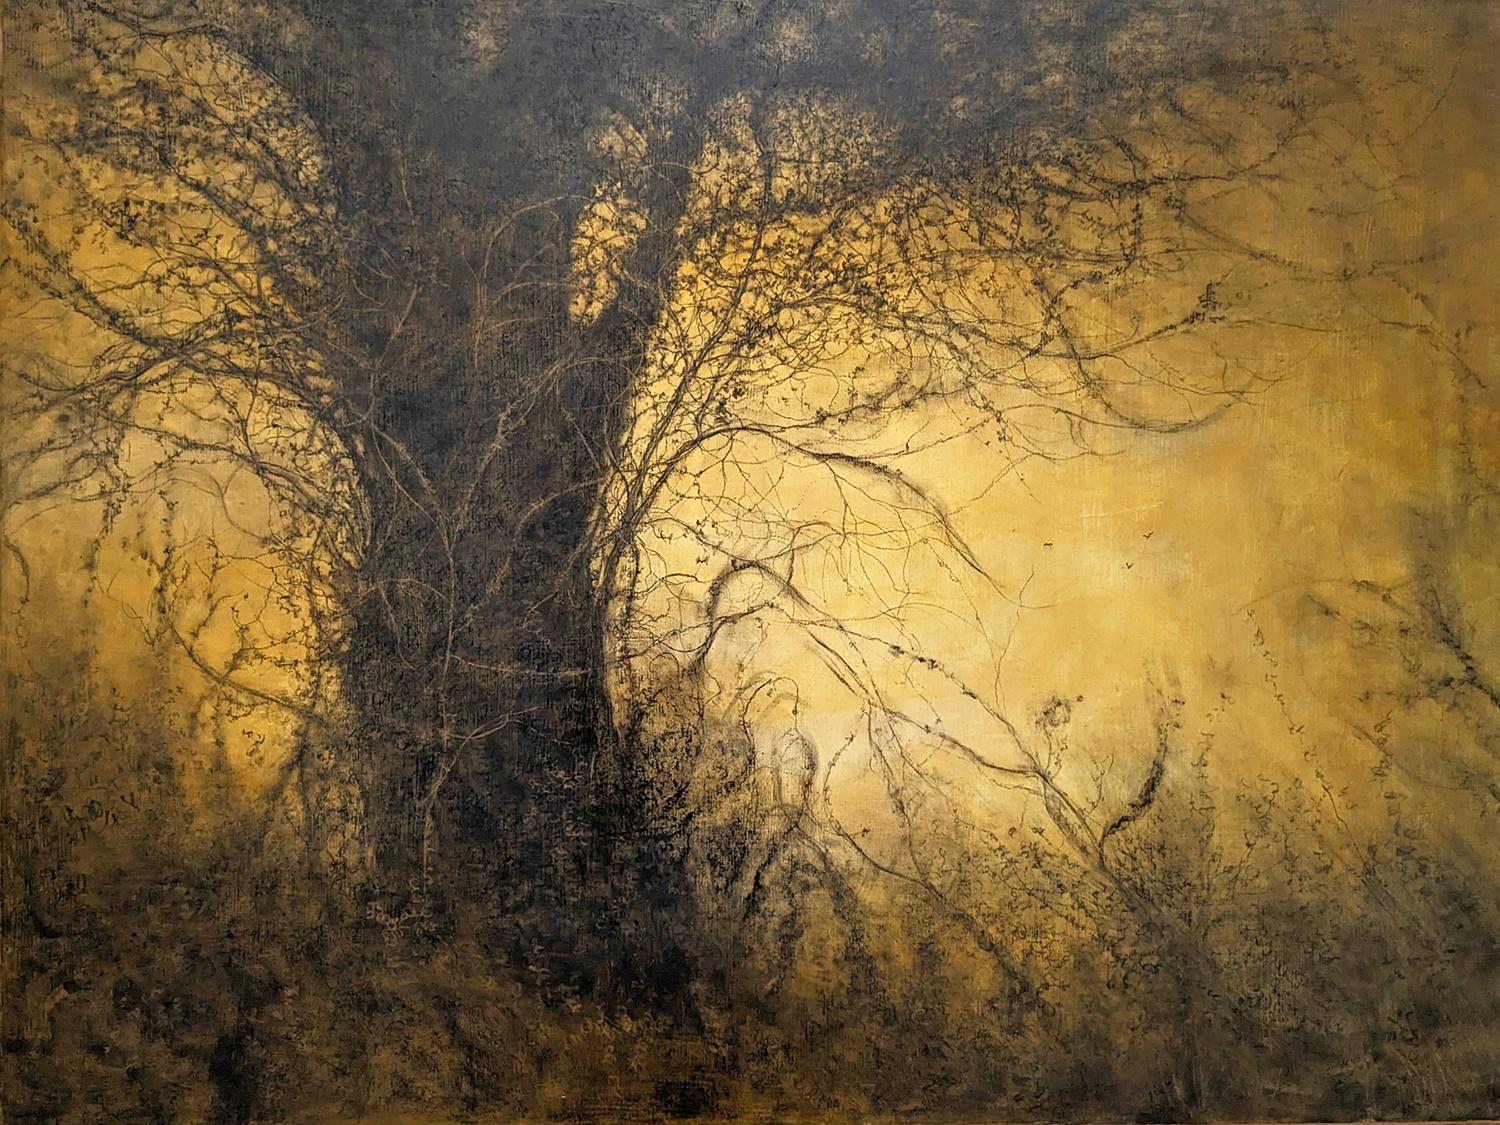 The Golden Hour (Sonnen gewaschene Landschaft, Kohlezeichnung von Bäumen im Wald)